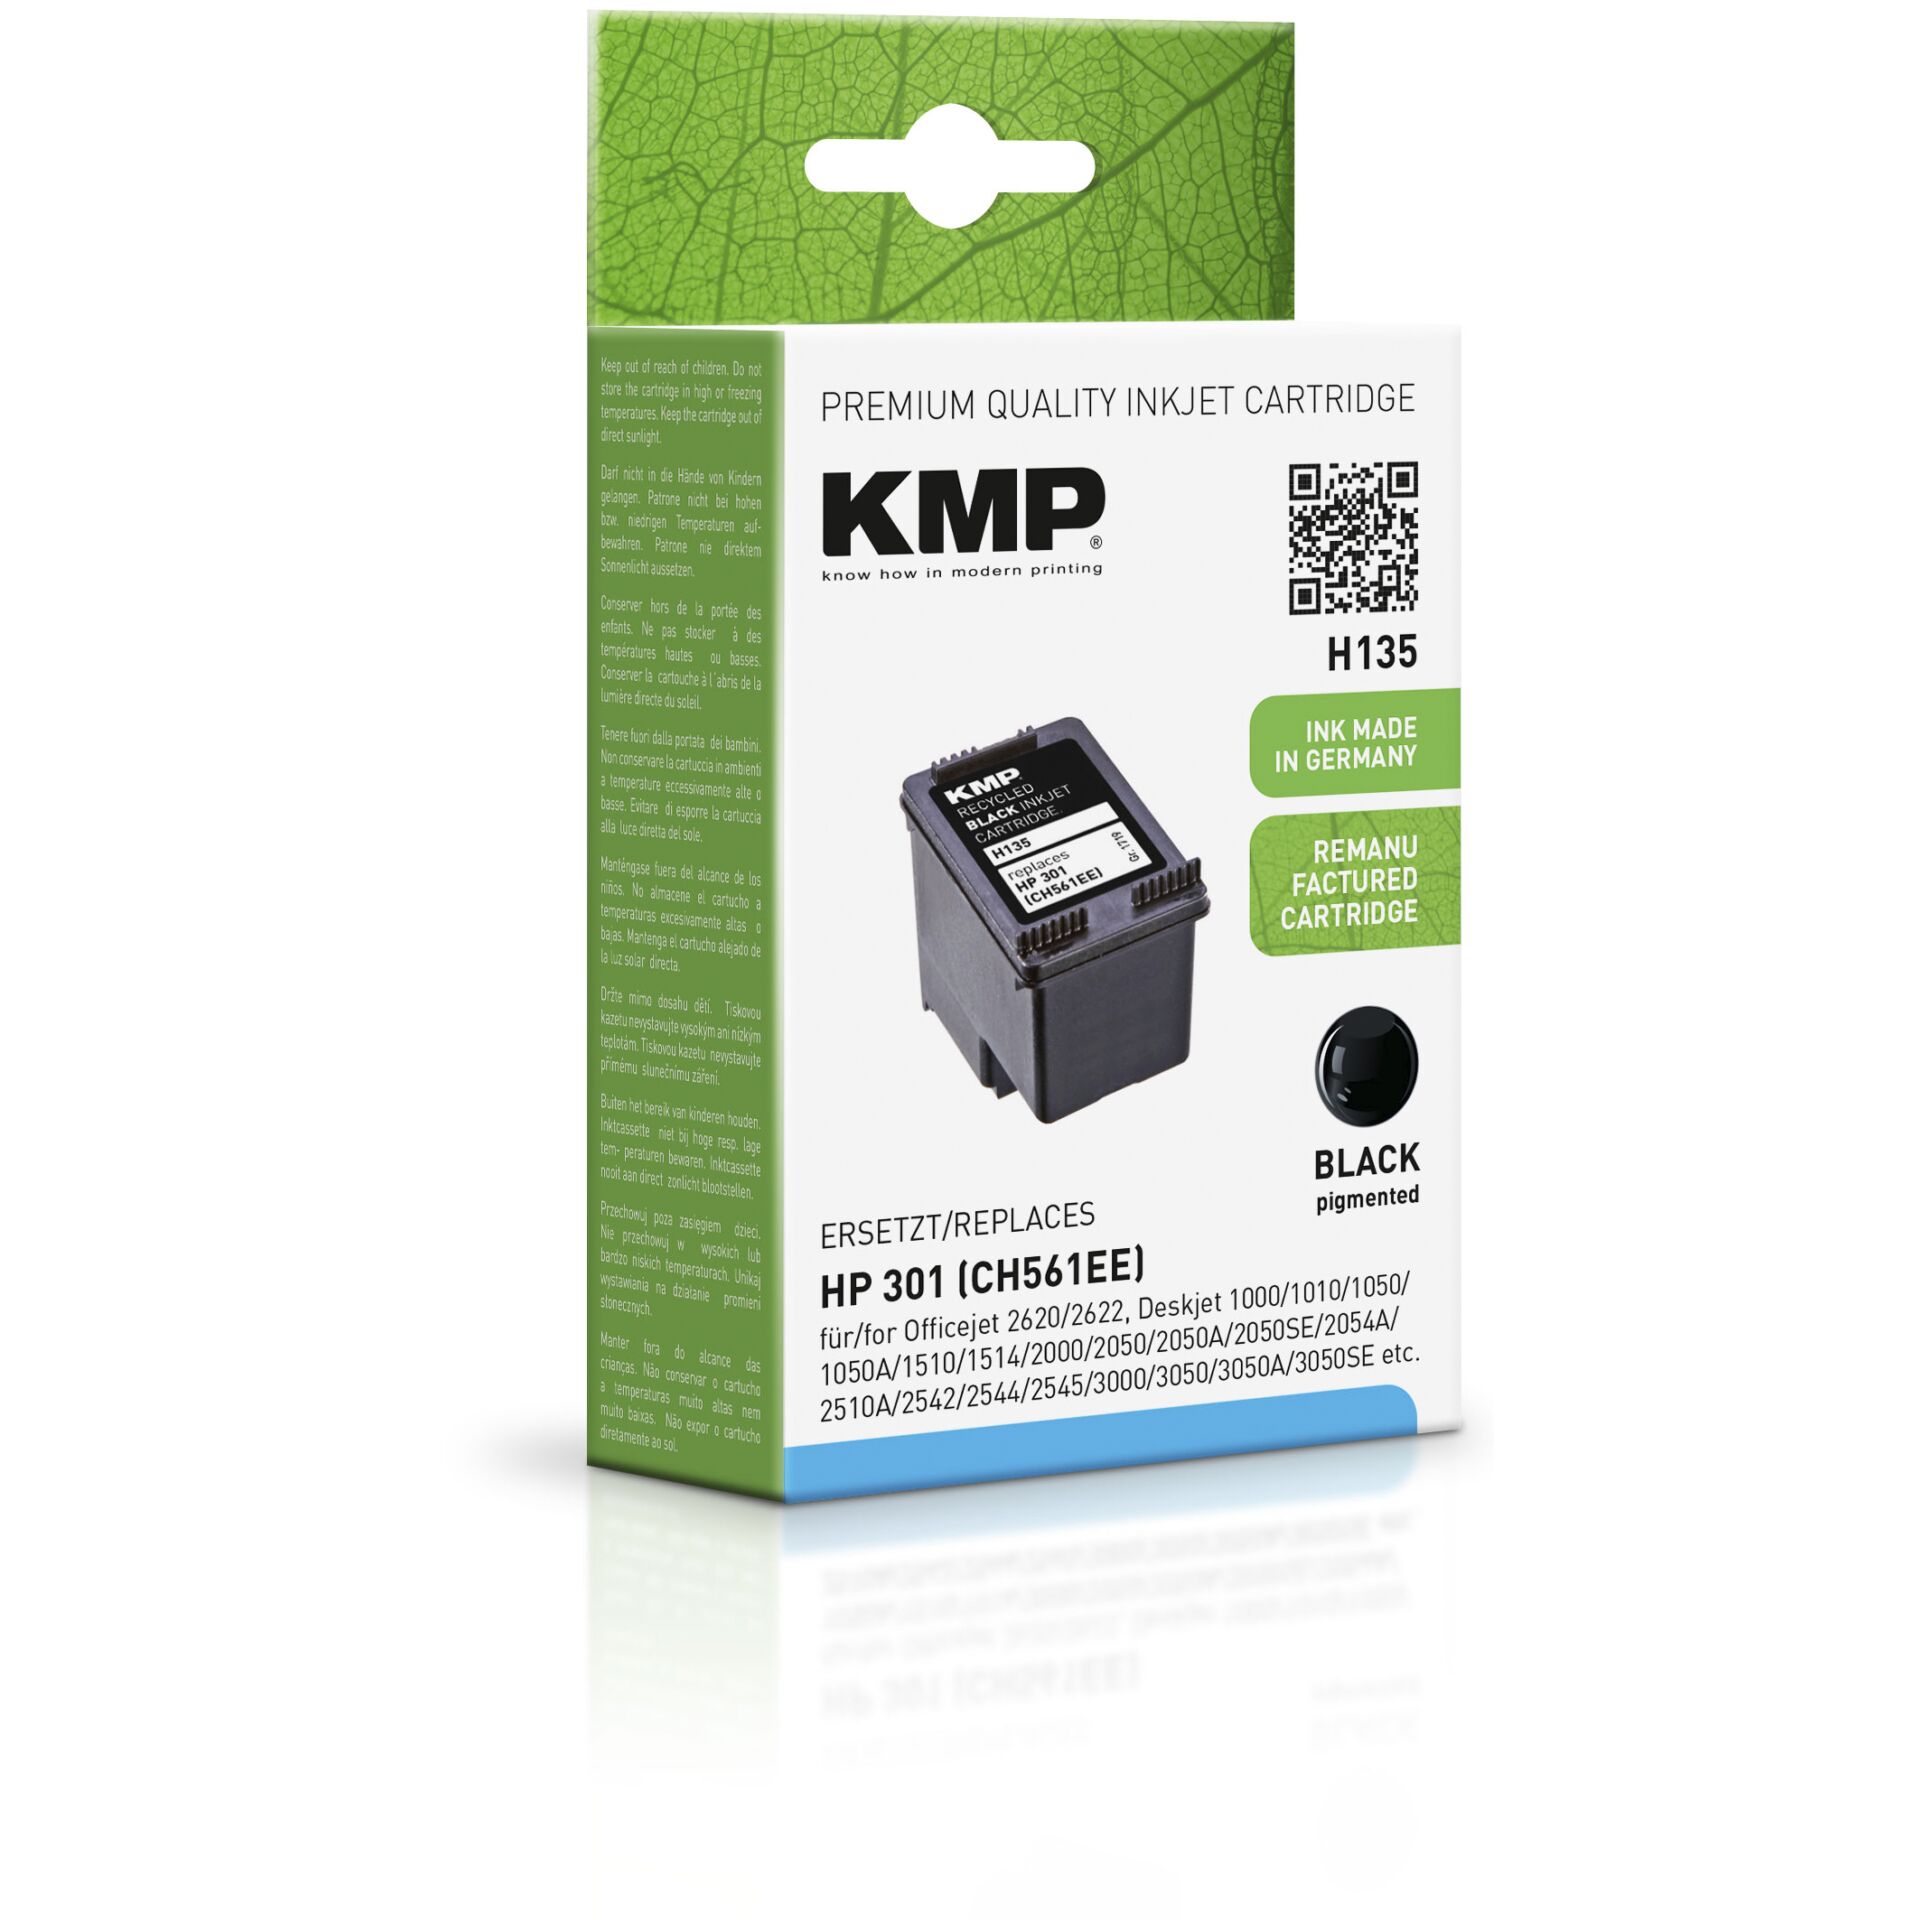 HP refilled S. Patrone Printtechnik -Kmp Kmp Hardware/Electronic Printtechnik Ag CH561EE H135 Ag NR.301 190 black -KMP